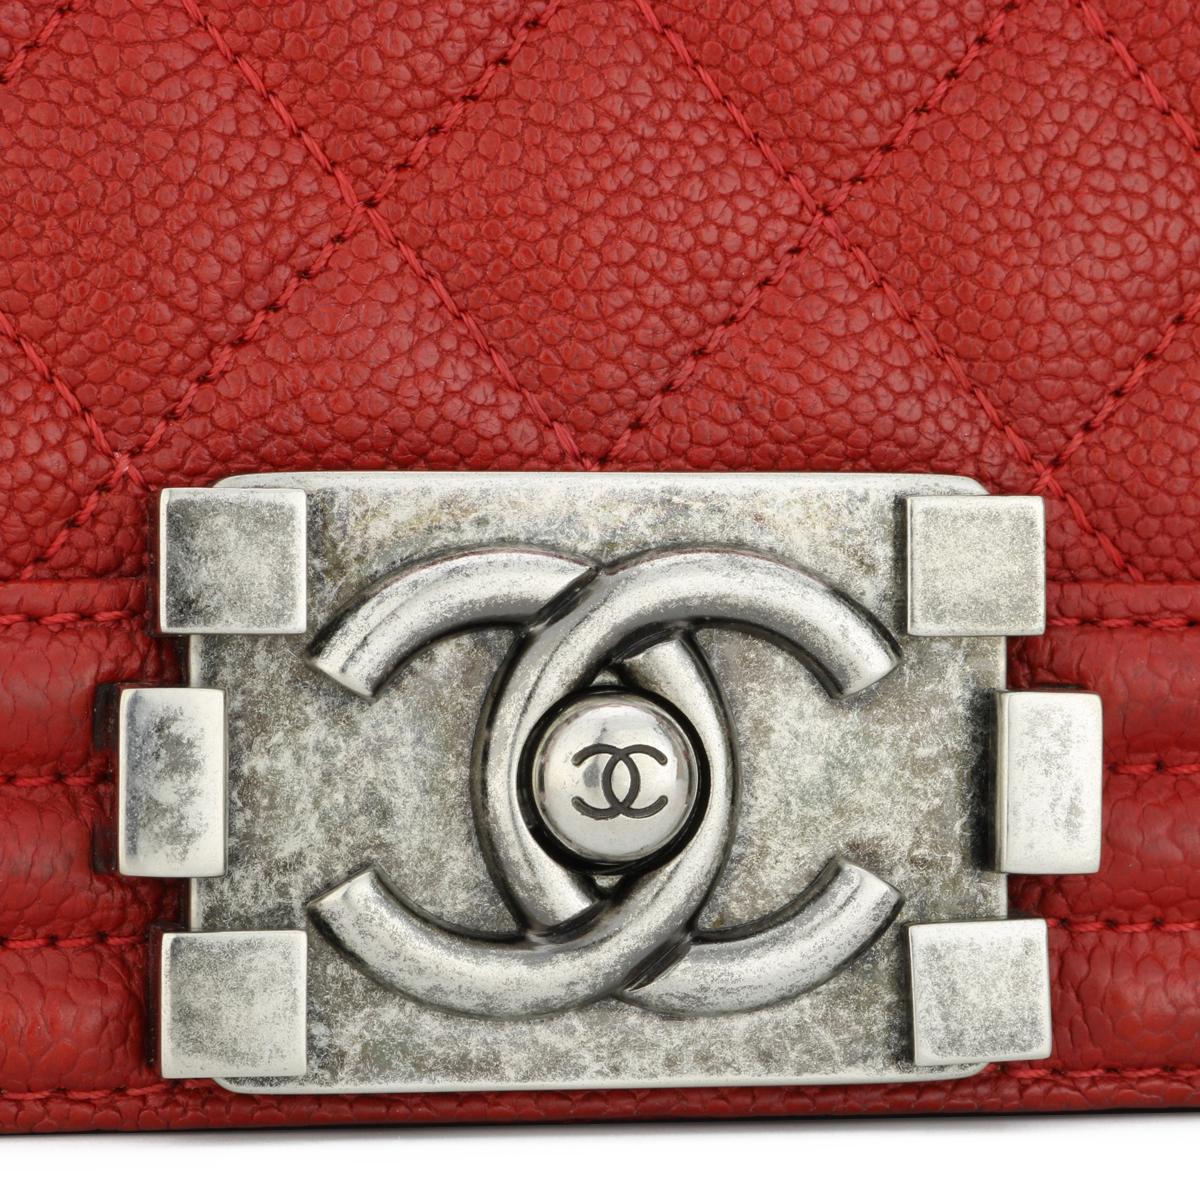 CHANEL Neue Medium gesteppte Boy Bag in Rot Kaviar mit Rutheniumbeschlägen 2016 für Damen oder Herren im Angebot